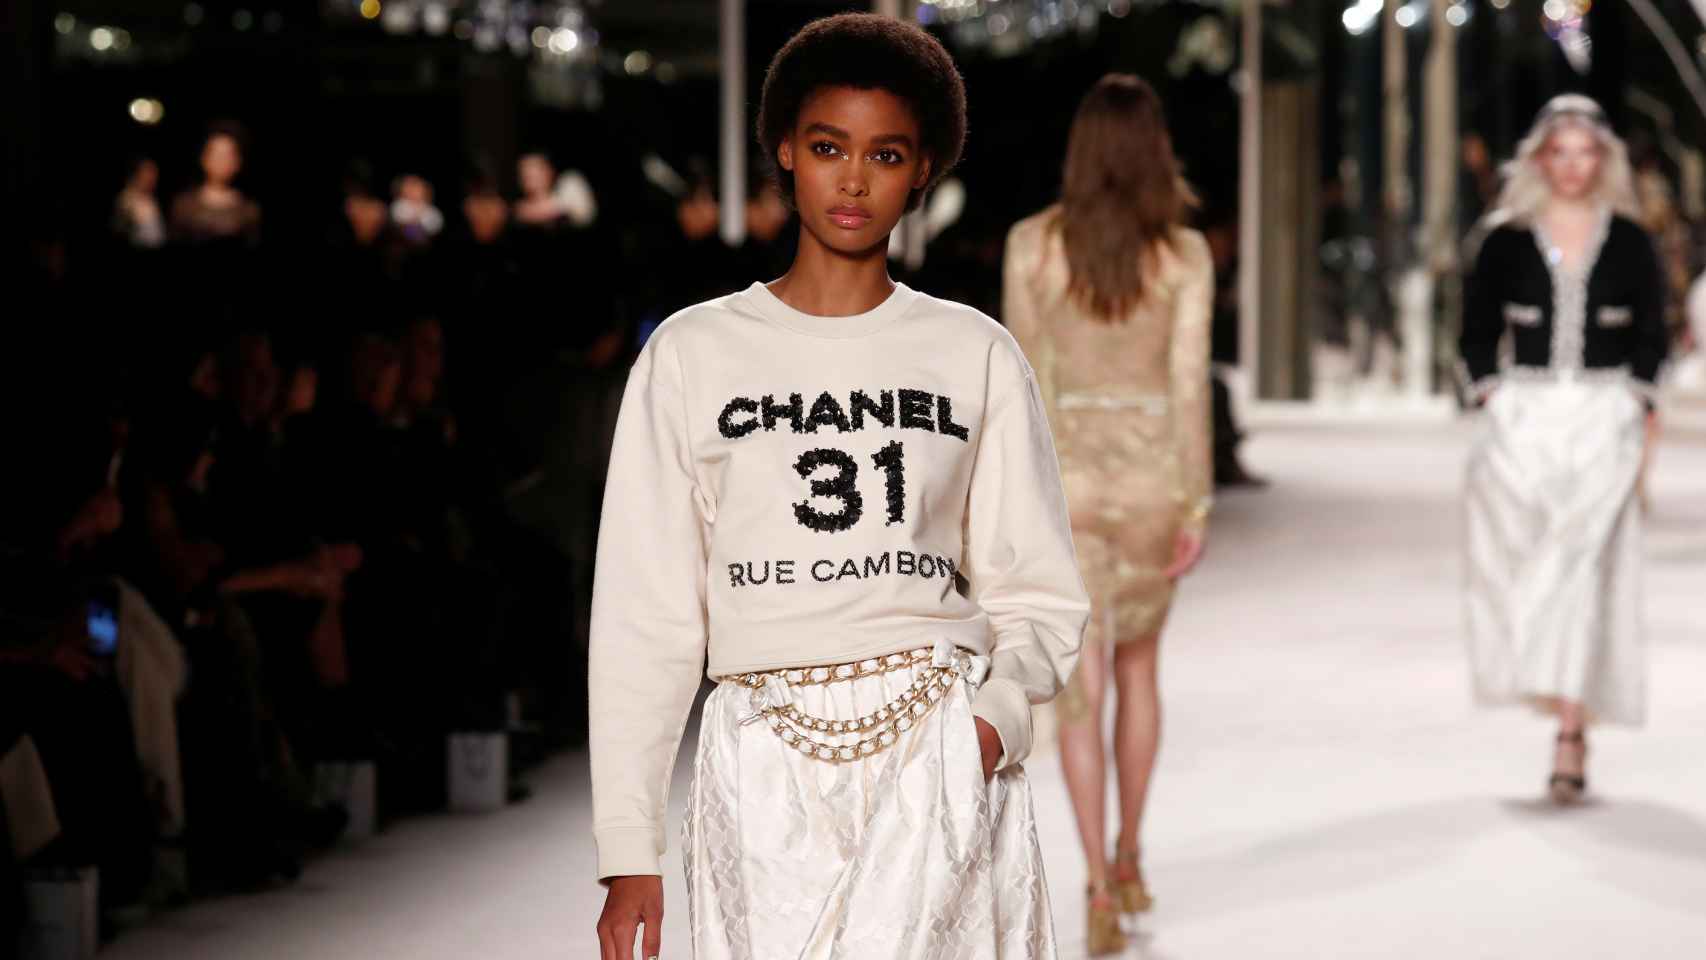 La moda cambia pero el estilo  perdura, era la frase mítica de Chanel en la que se ha inspirado el desfile.